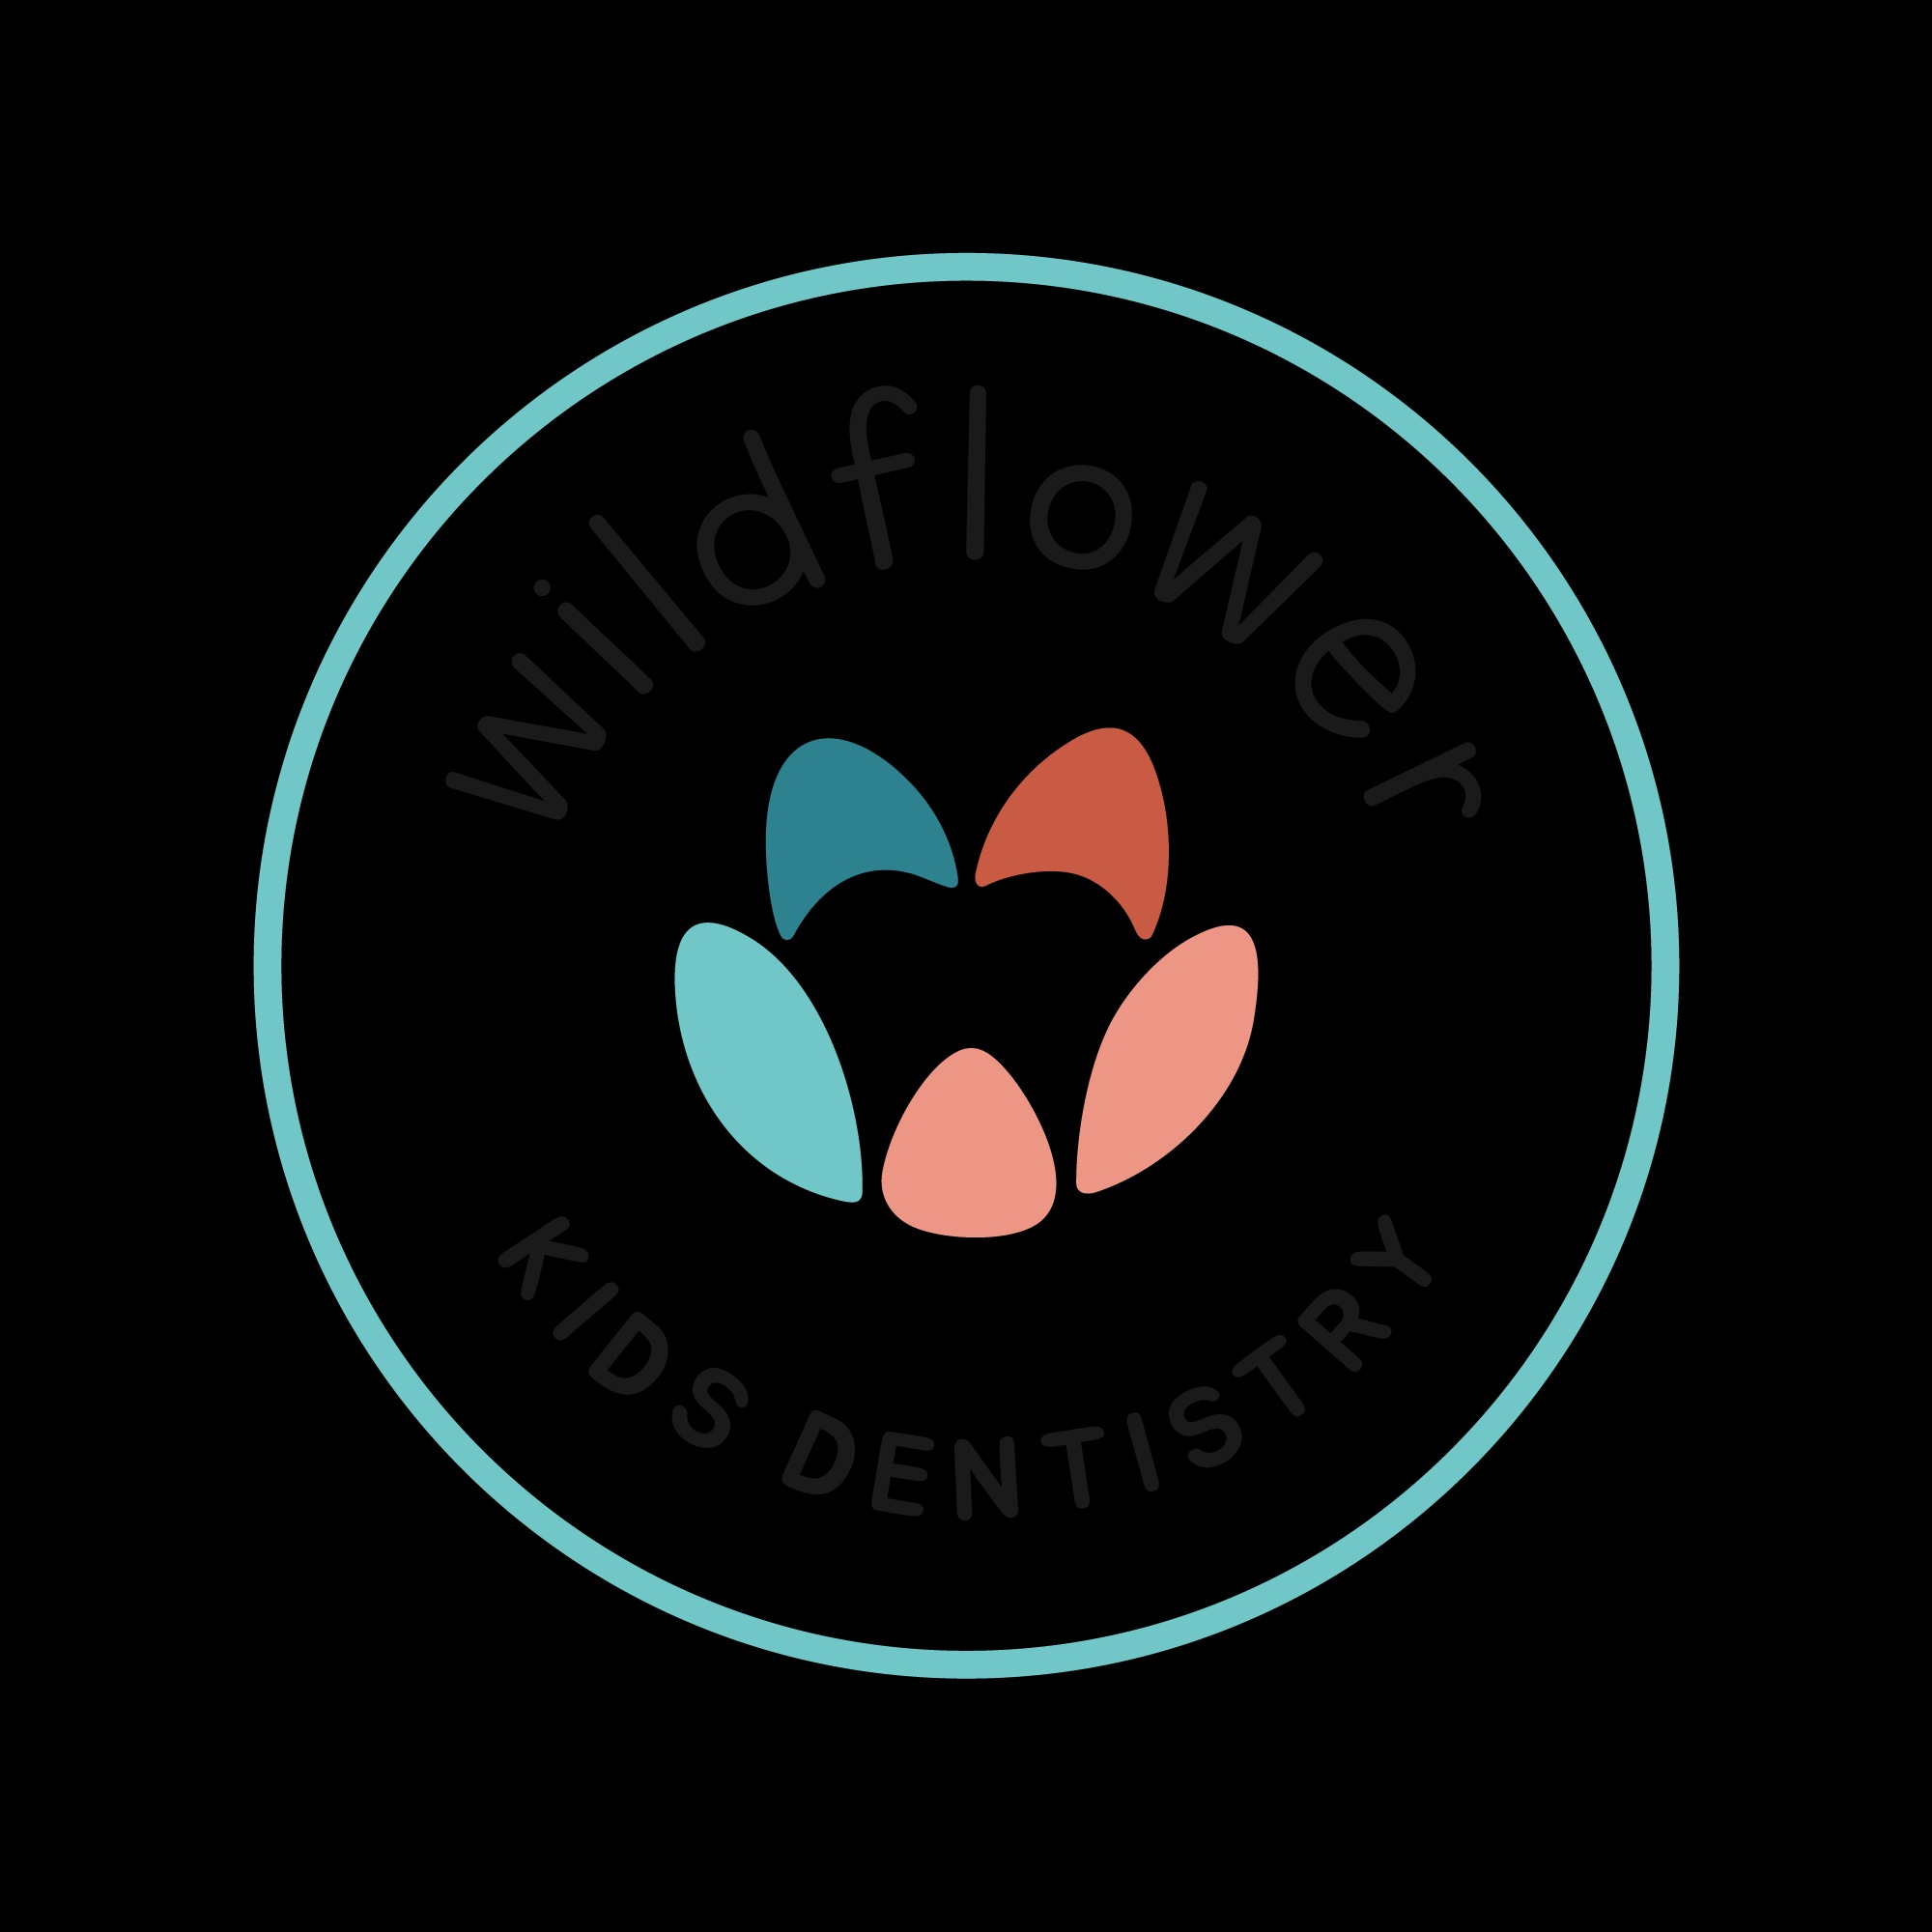 Wildflower Kids Dentistry - Dubuque, IA 52002 - (563)582-1478 | ShowMeLocal.com